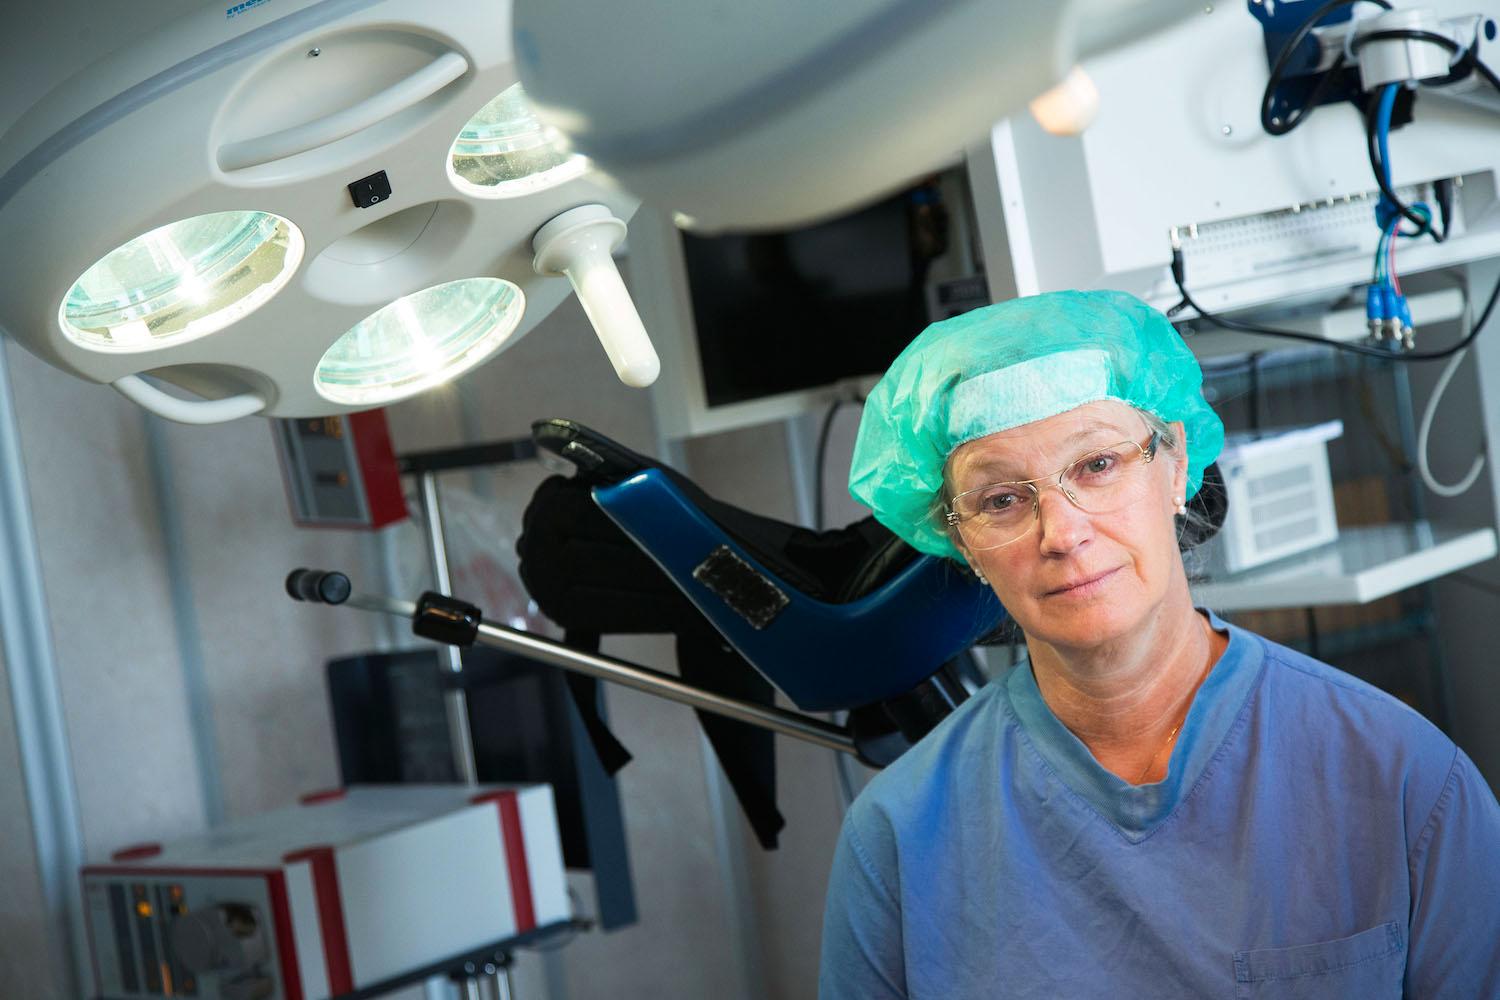 Eva Uustal är överläkare i obstetrik och gynekologi på Linköpings universitetssjukhus och expert på förlossningsskador. Hon har tagit initiativet till att ett utbildningsprogram för barnmorskor och förlossningsläkare för att minska bristningarna nu har tagits fram och är på väg ut till förlossningsklinikerna.